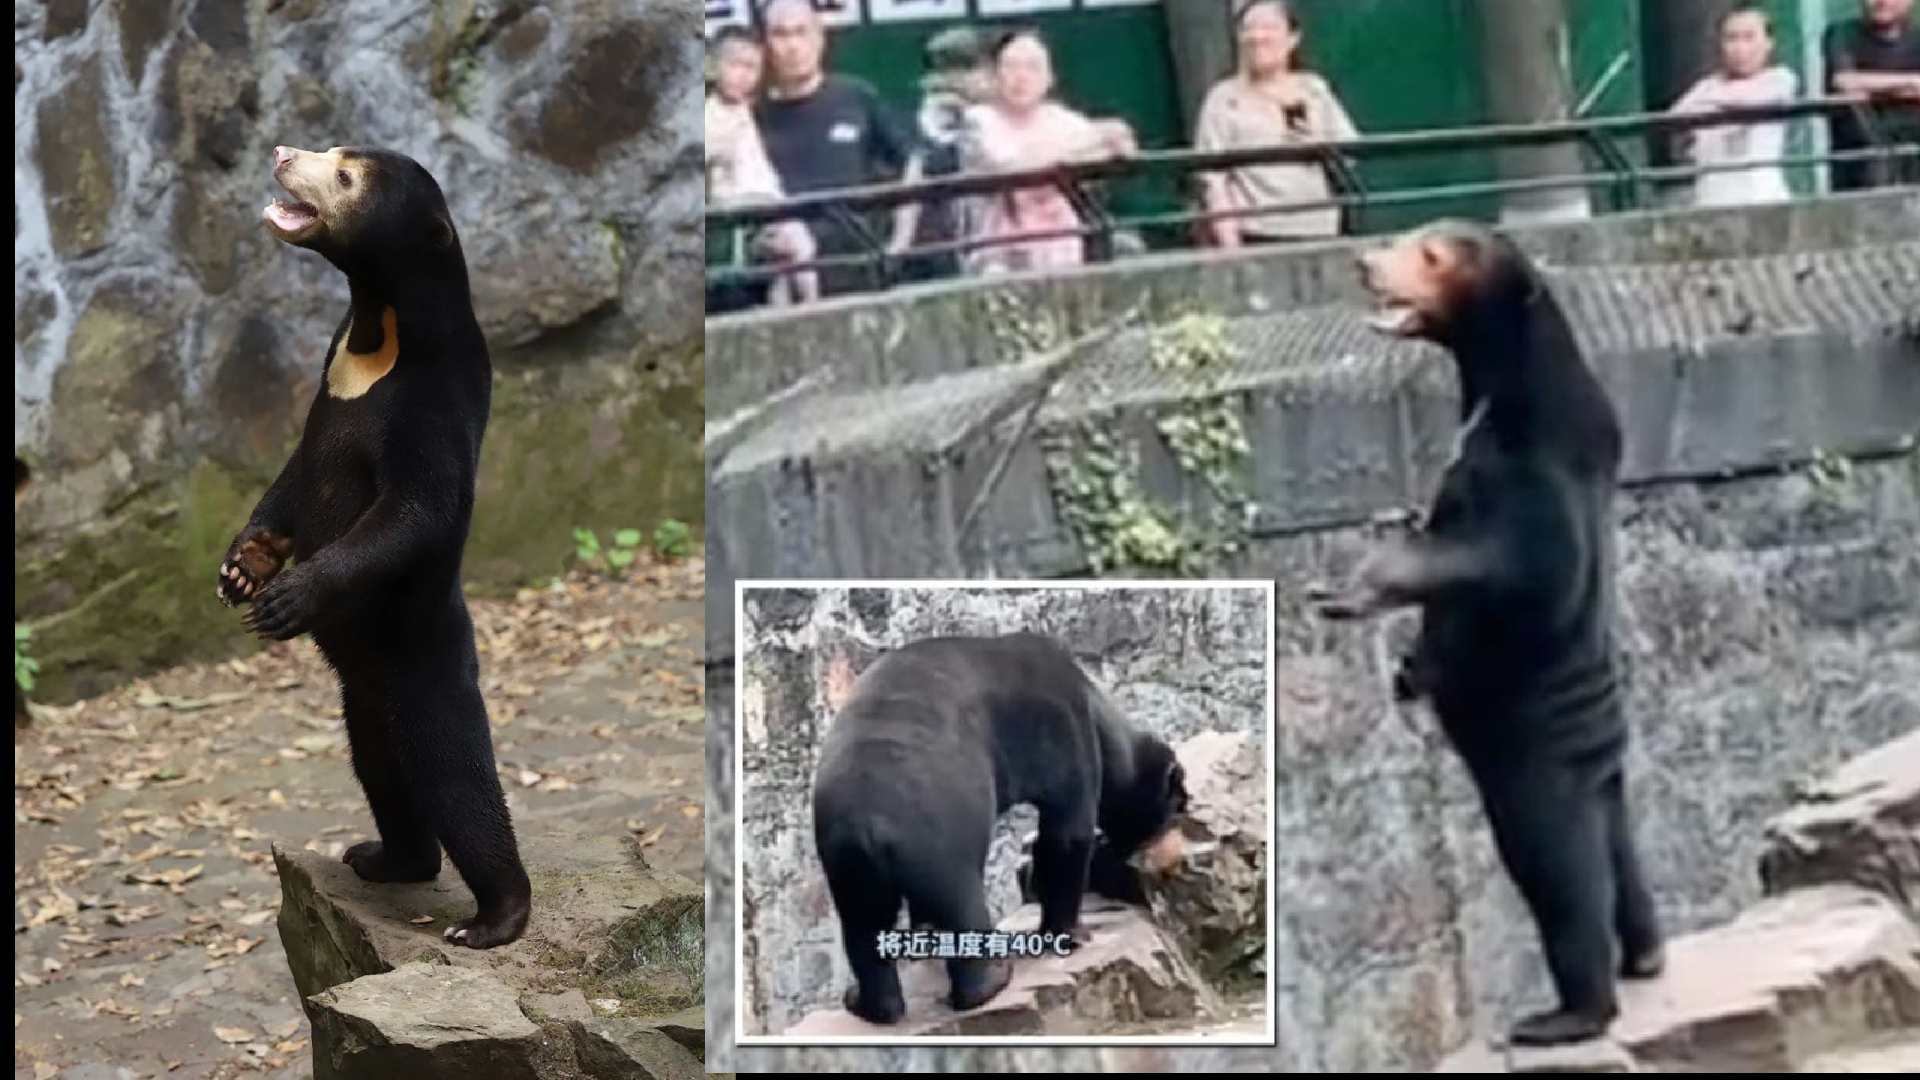 Sospechas de visitantes e internautas sobre humano disfrazado de oso en zoológico de China